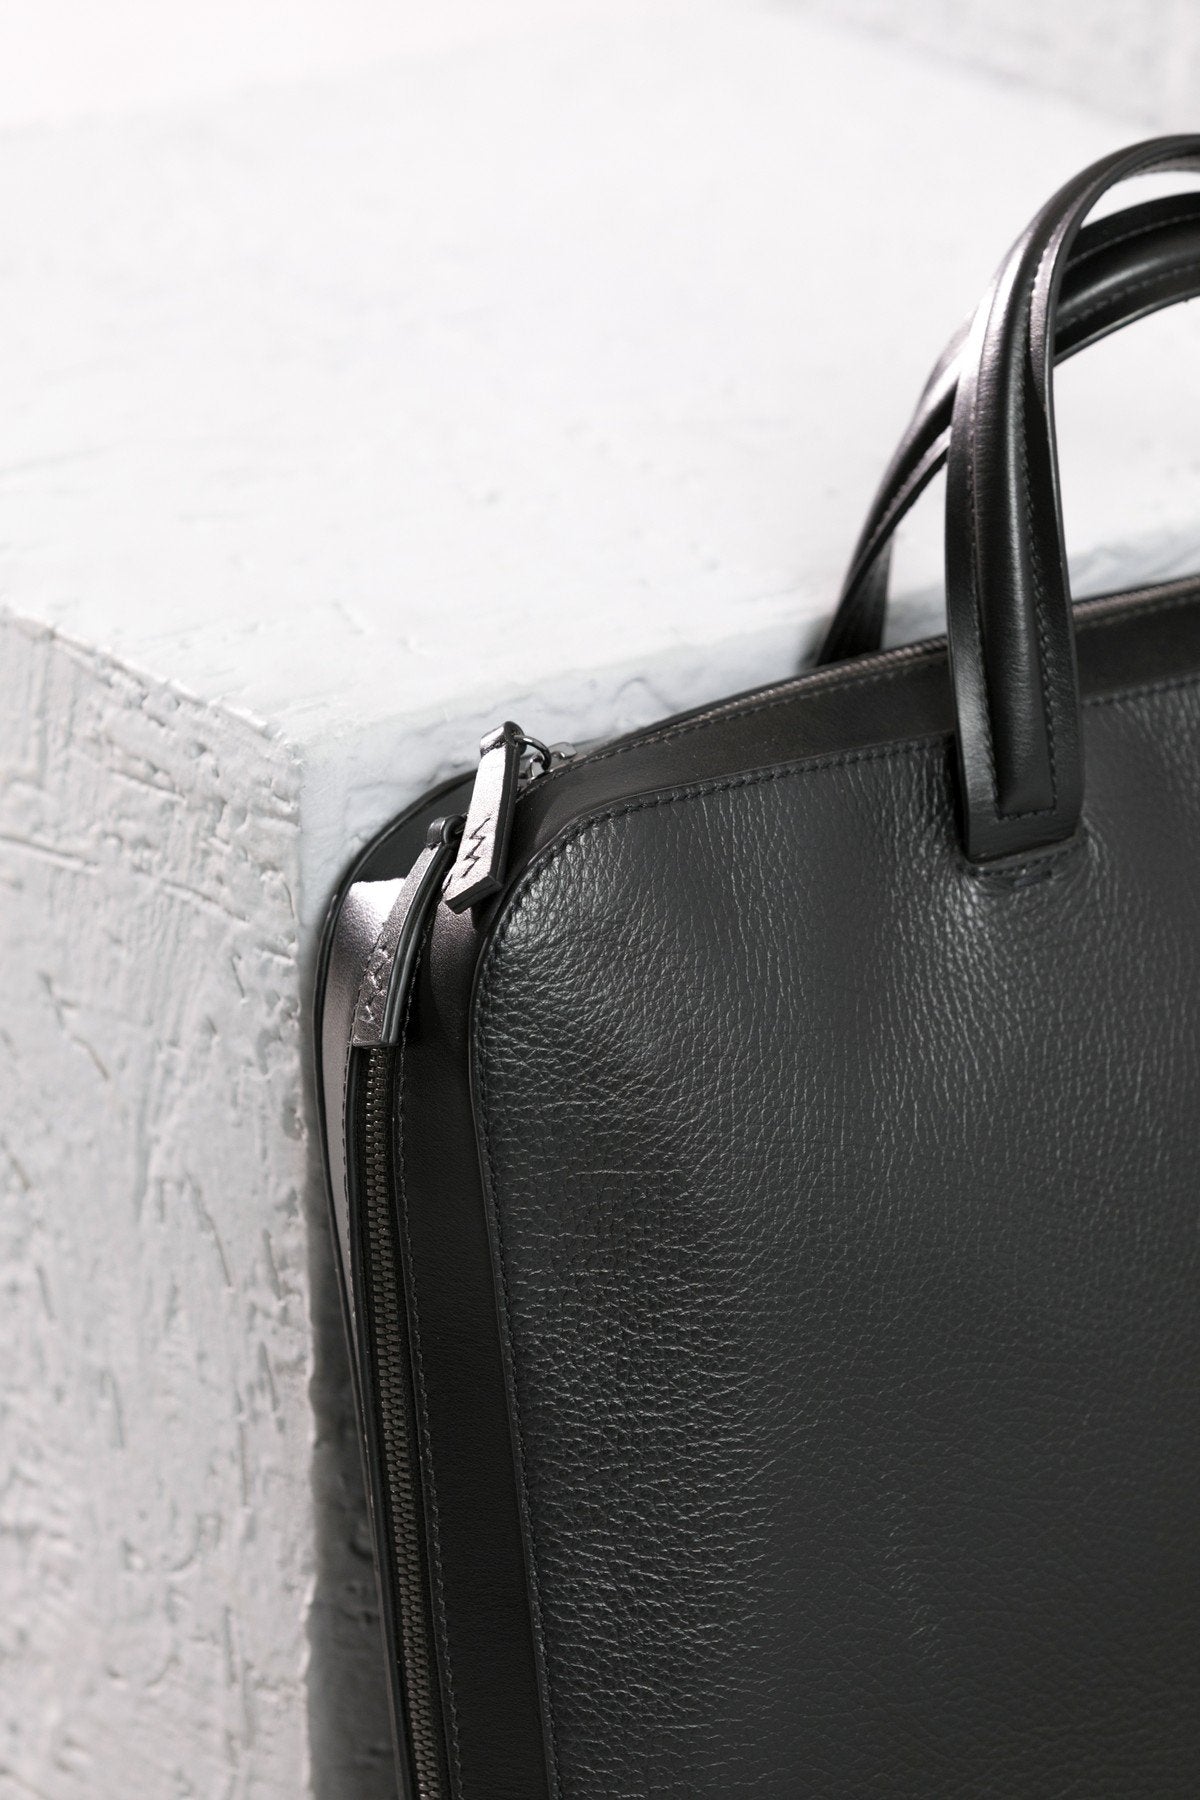 SPAHER Mens Leather Laptop Bag Briefcases For Men 15.6 Inch Leather Briefcase Business Work Laptop Handbag Shoulder Bag Messenger Bag with Removable